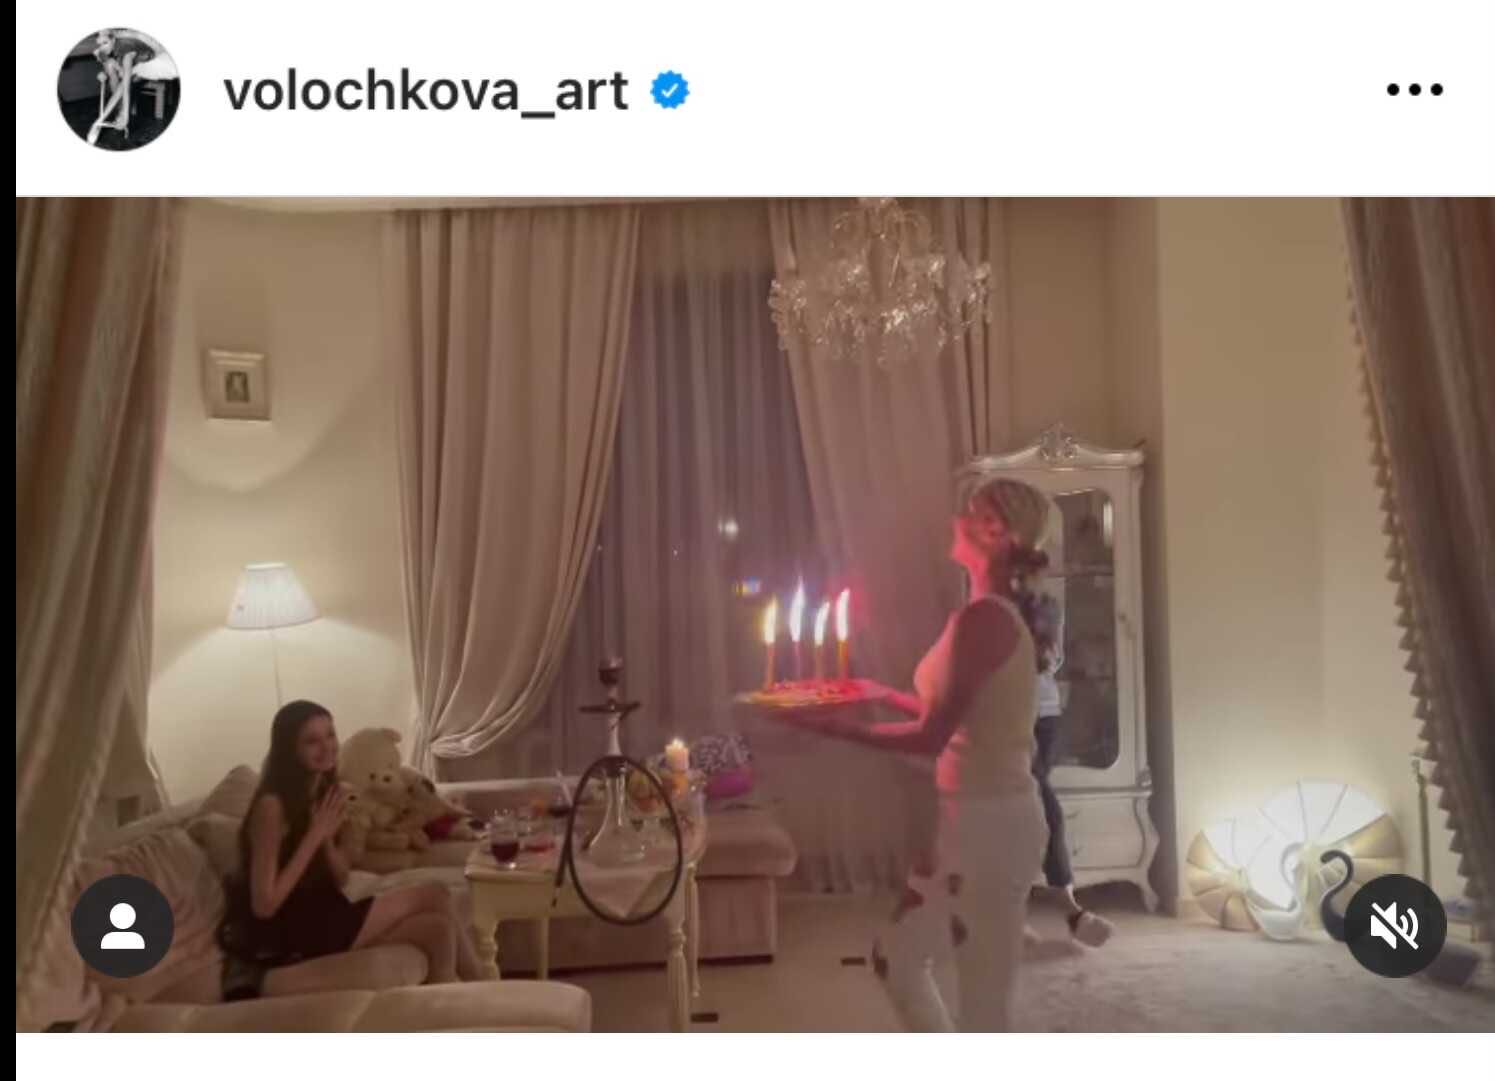 Анастасия Волочкова поздравила дочь с днём рождения, рассказав, какая она хорошая мать